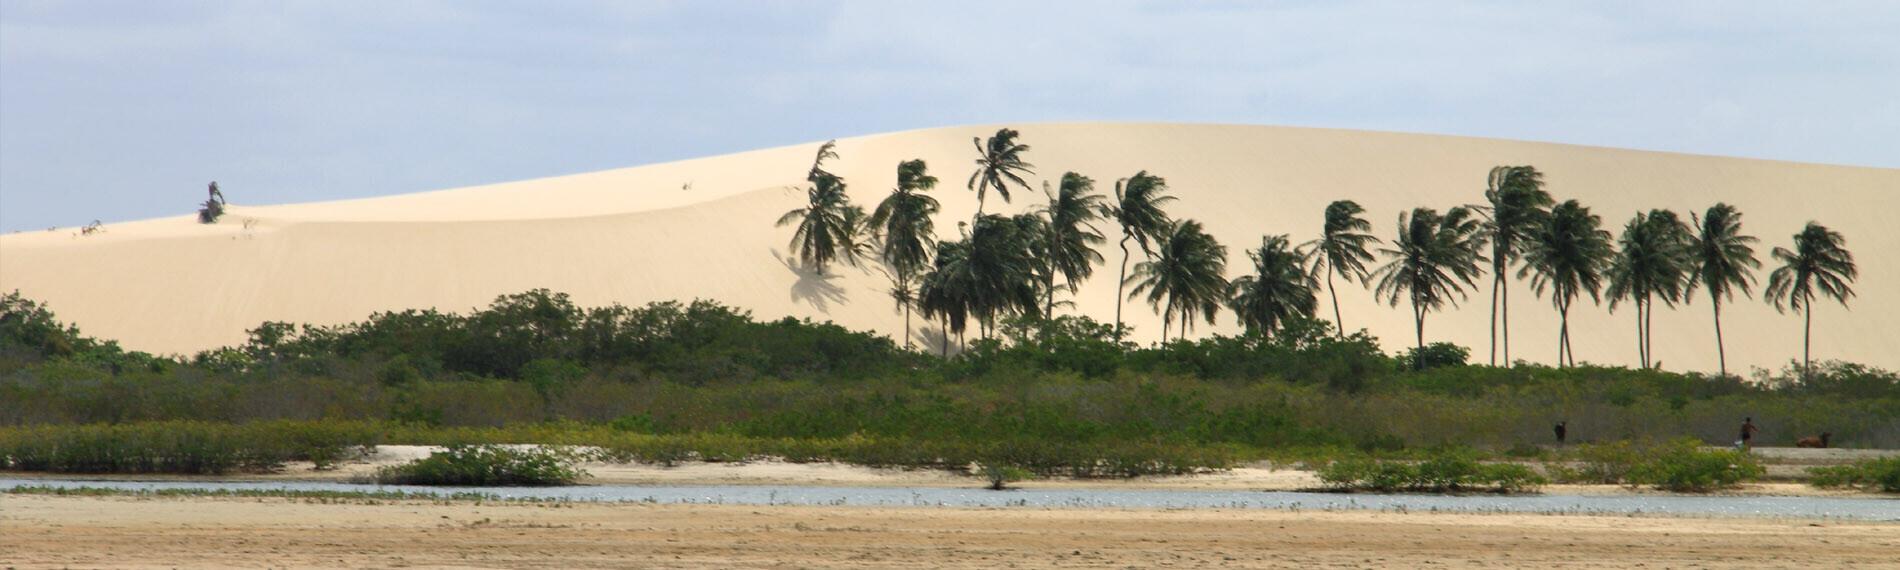 Sanddüne in Jericoacoara mit Palmen am Strand, bewölkter Himmel im Hintergrund.